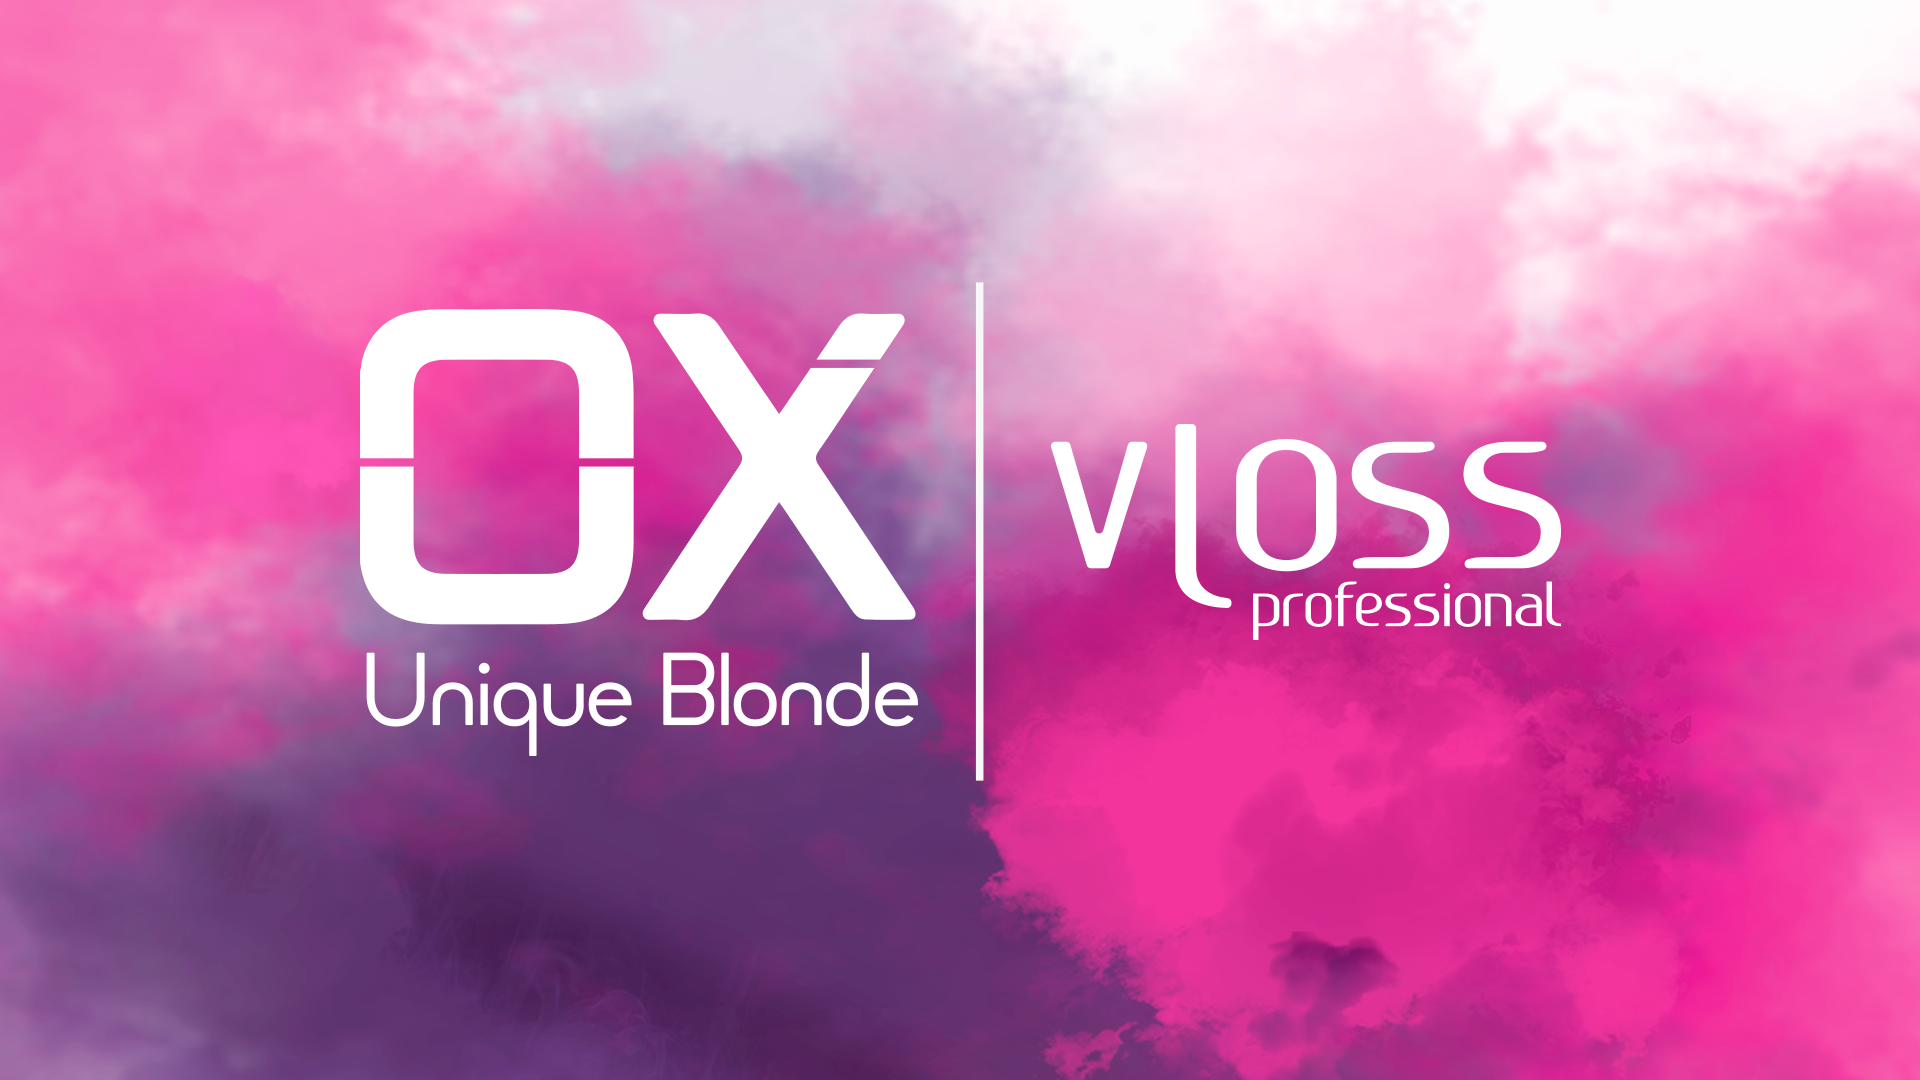 Vloss - OX 